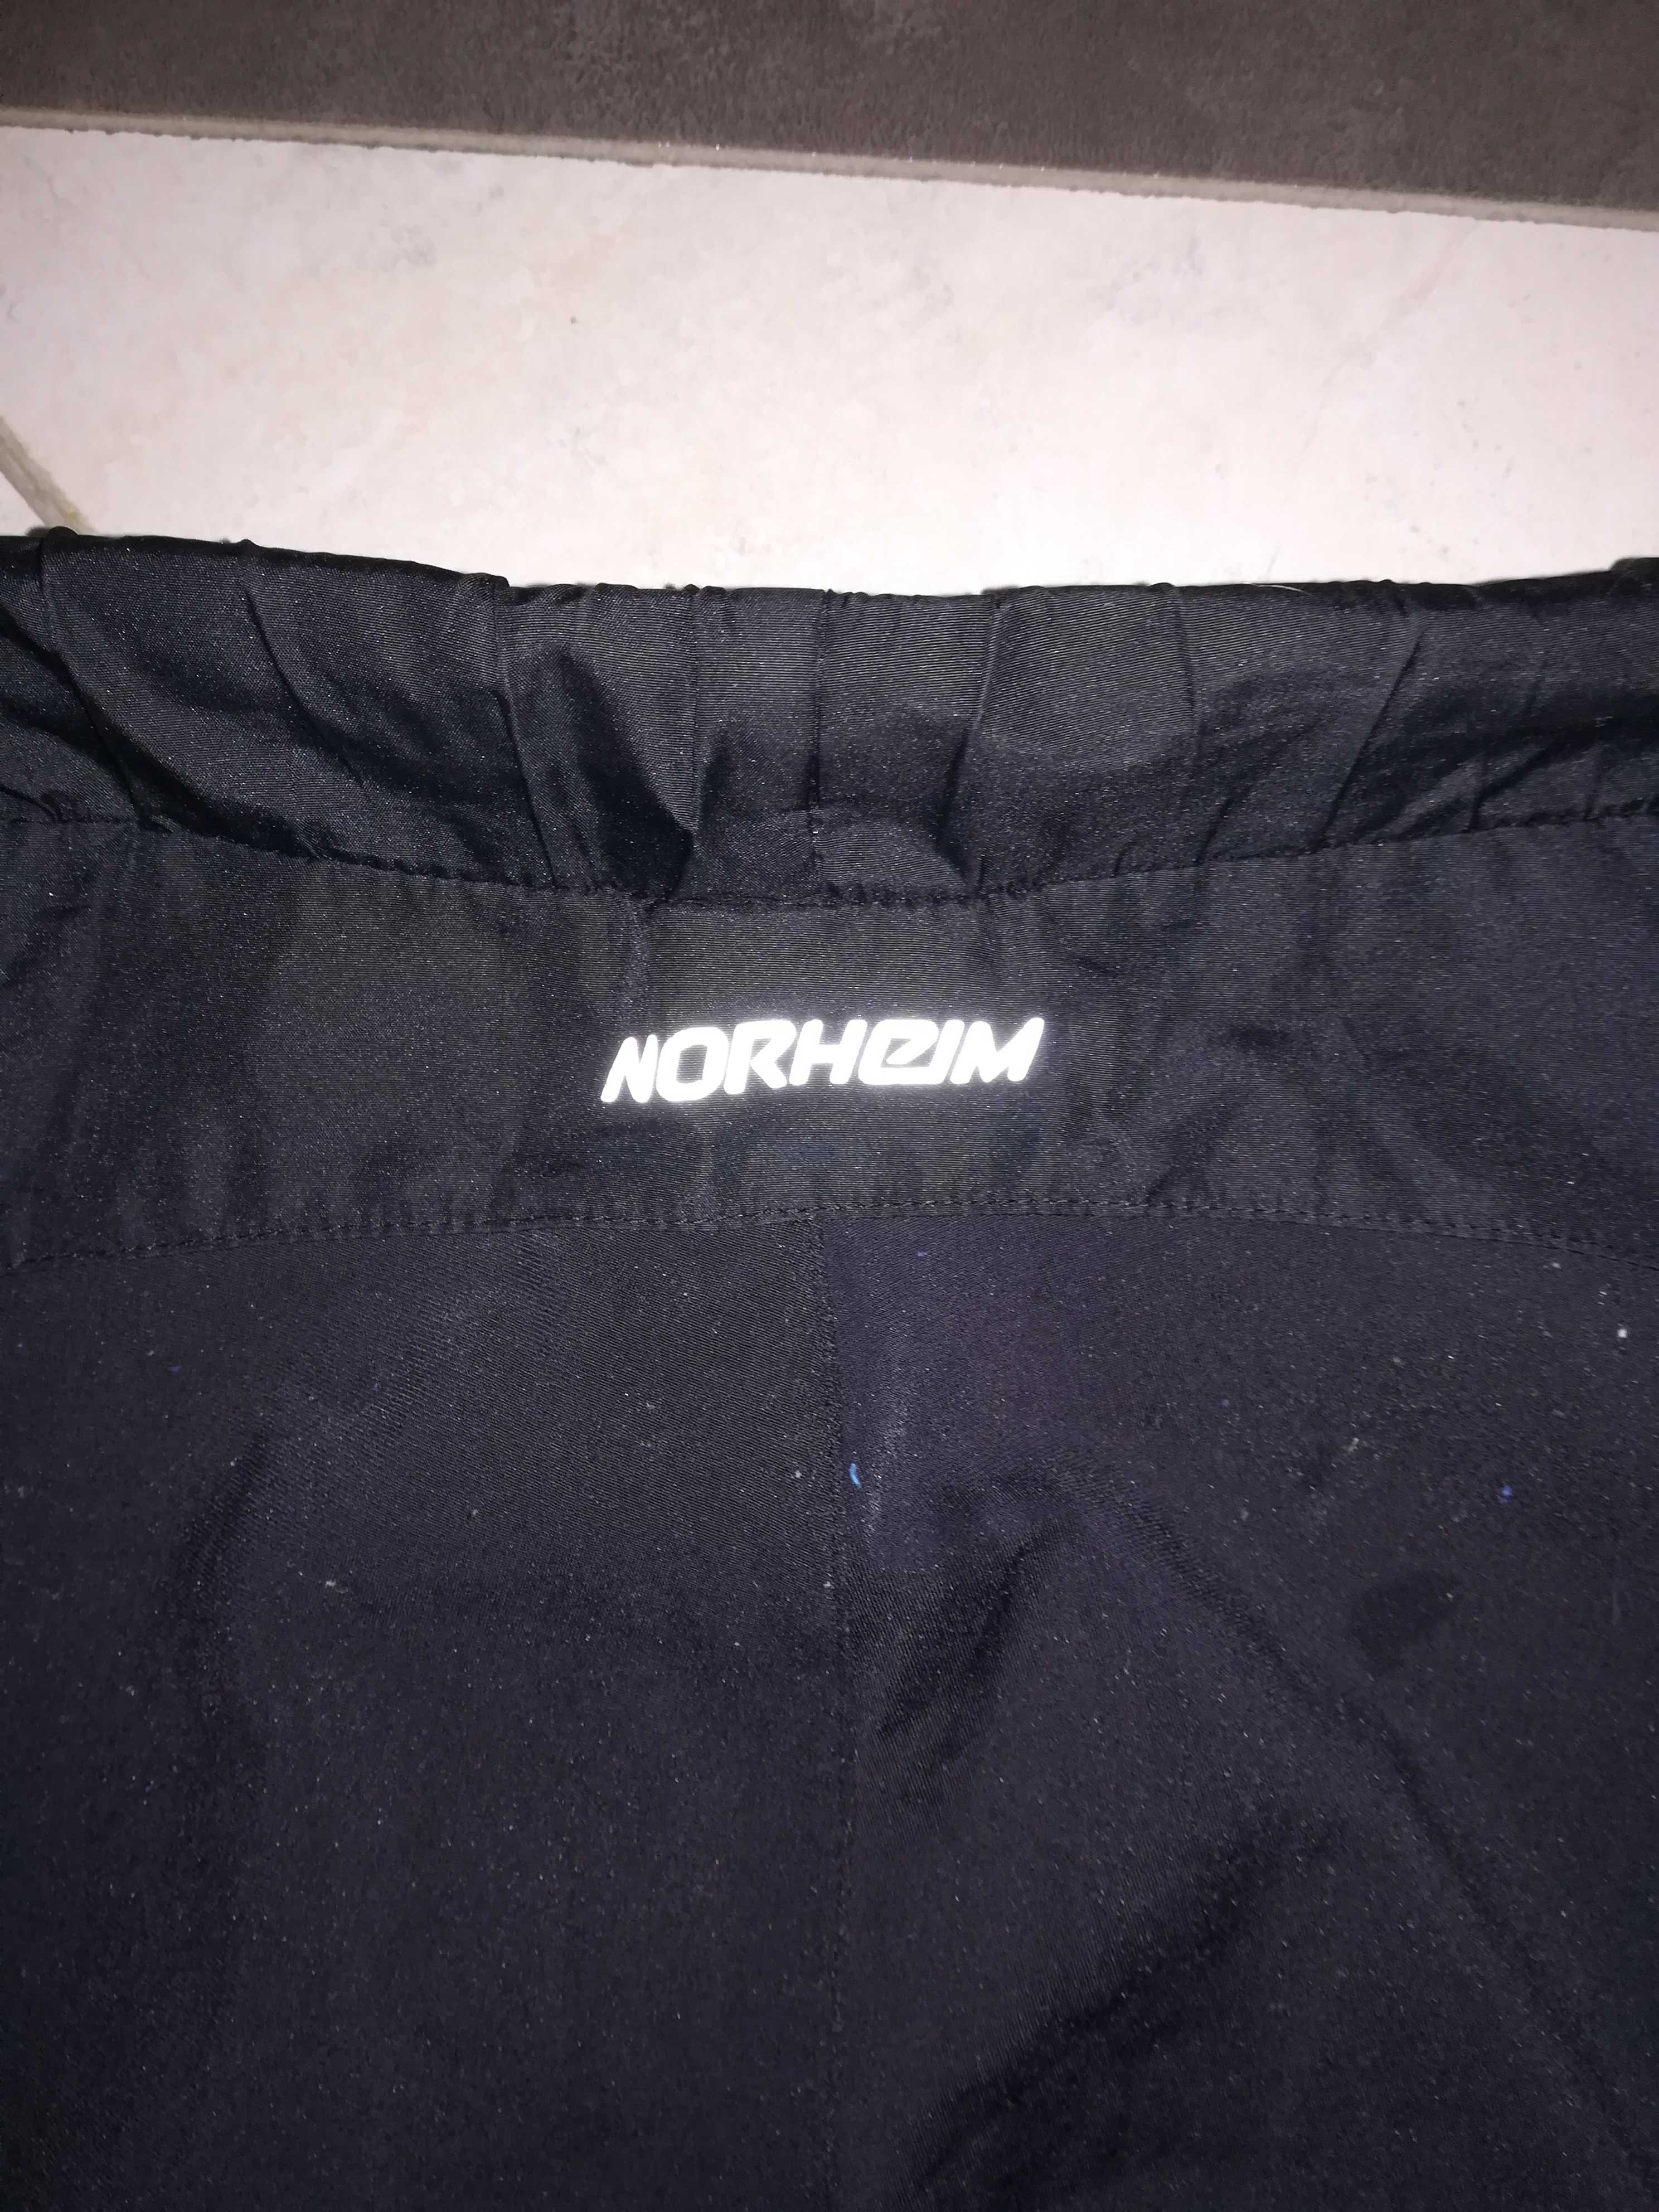 sportowe norweskie spodnie na 12 lat Norheim, doskonałe odblaski.